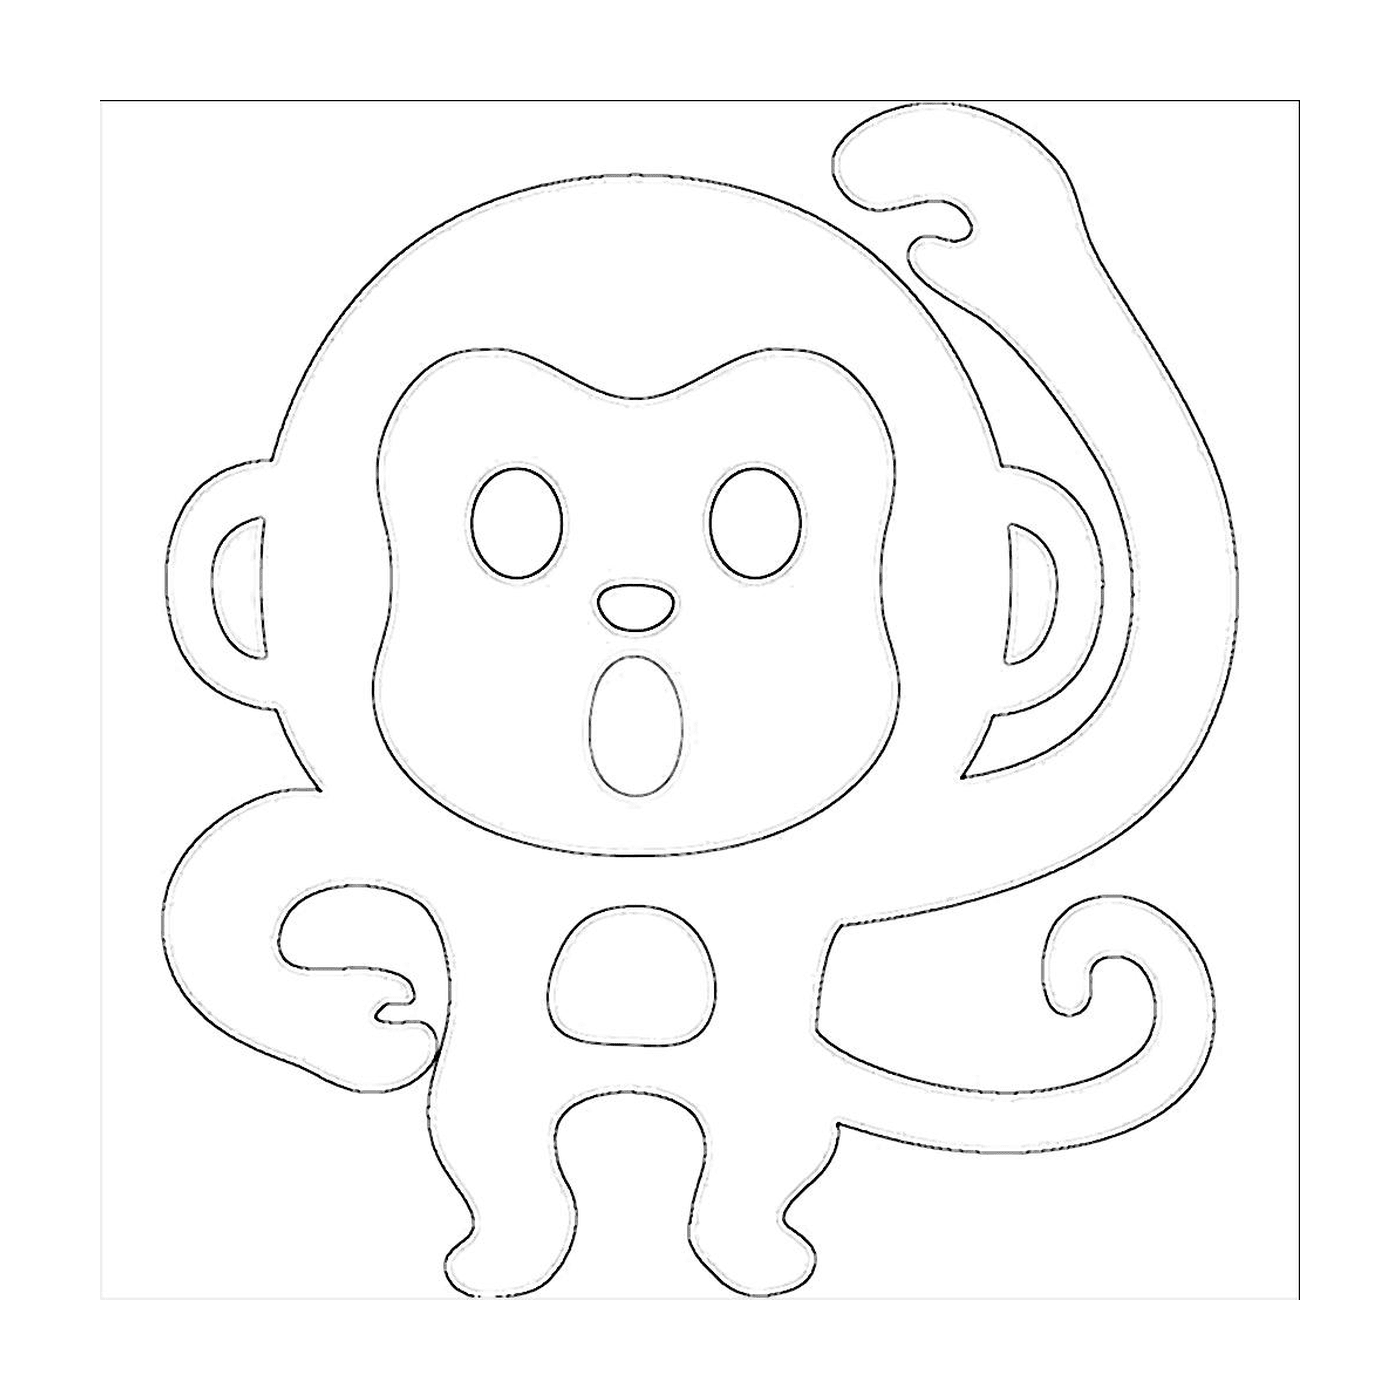  Un mono dibujante 